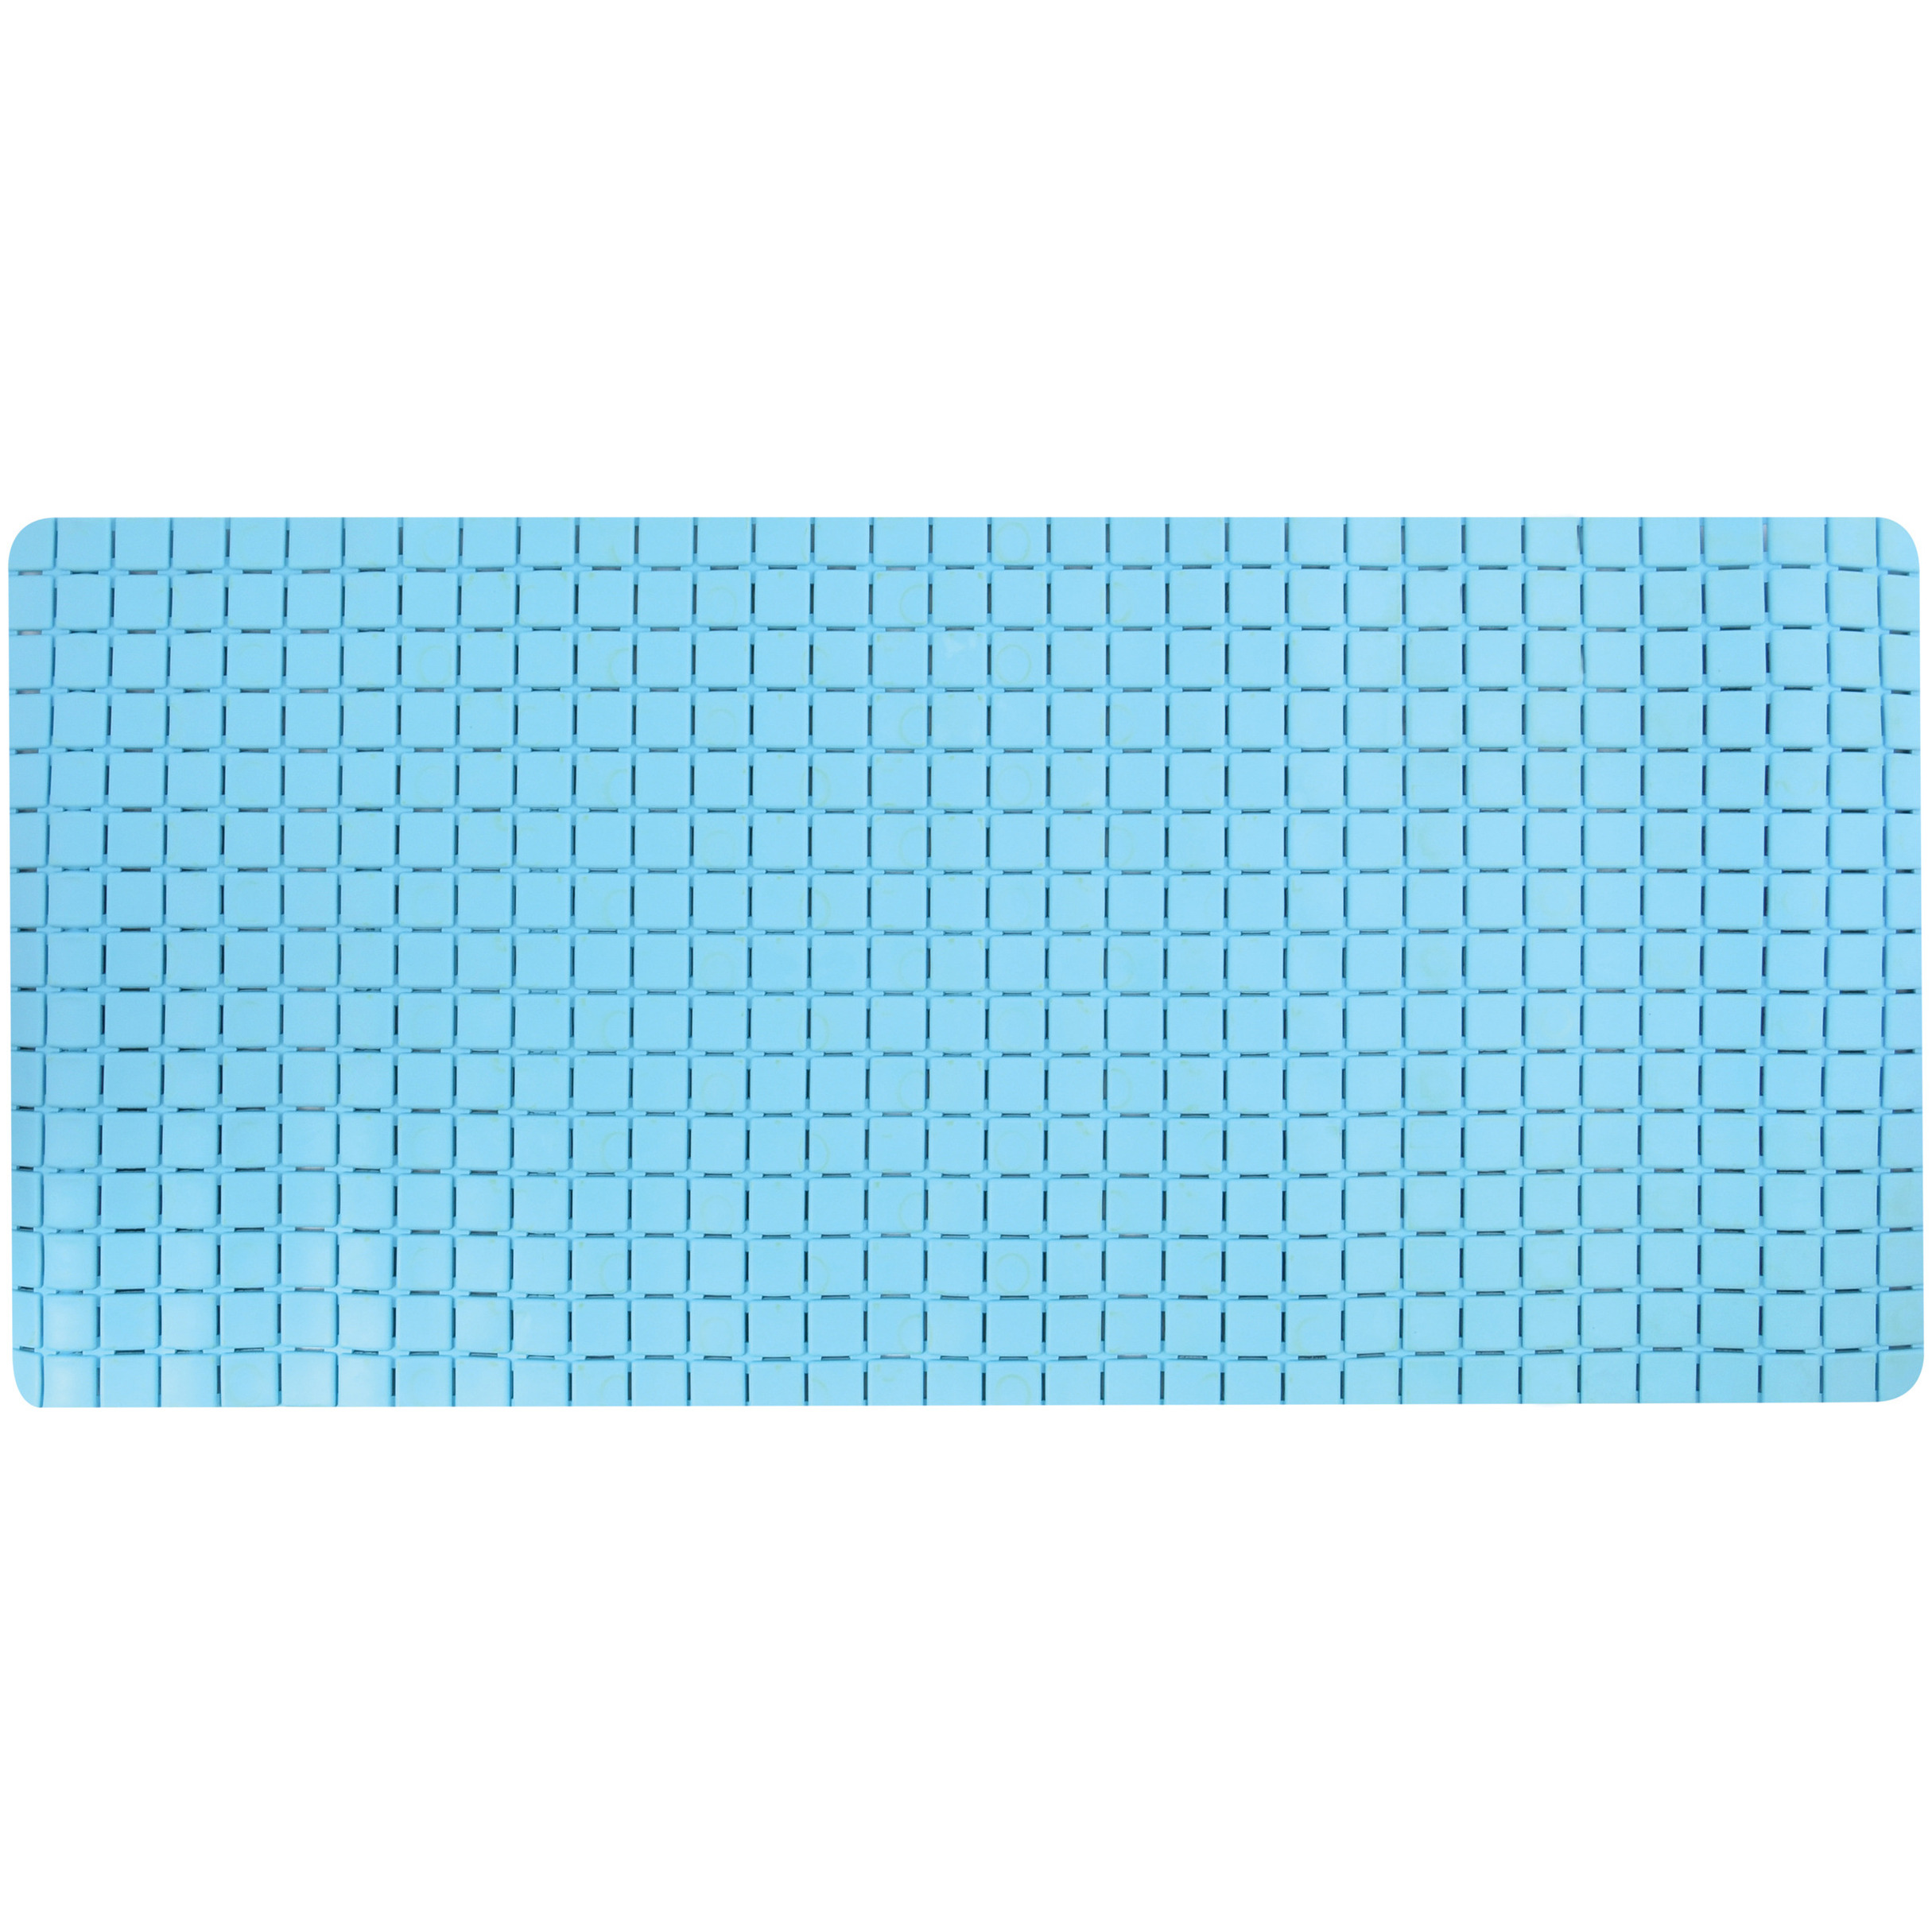 Douche-bad anti-slip mat badkamer rubber lichtblauw 76 x 36 cm rechthoek